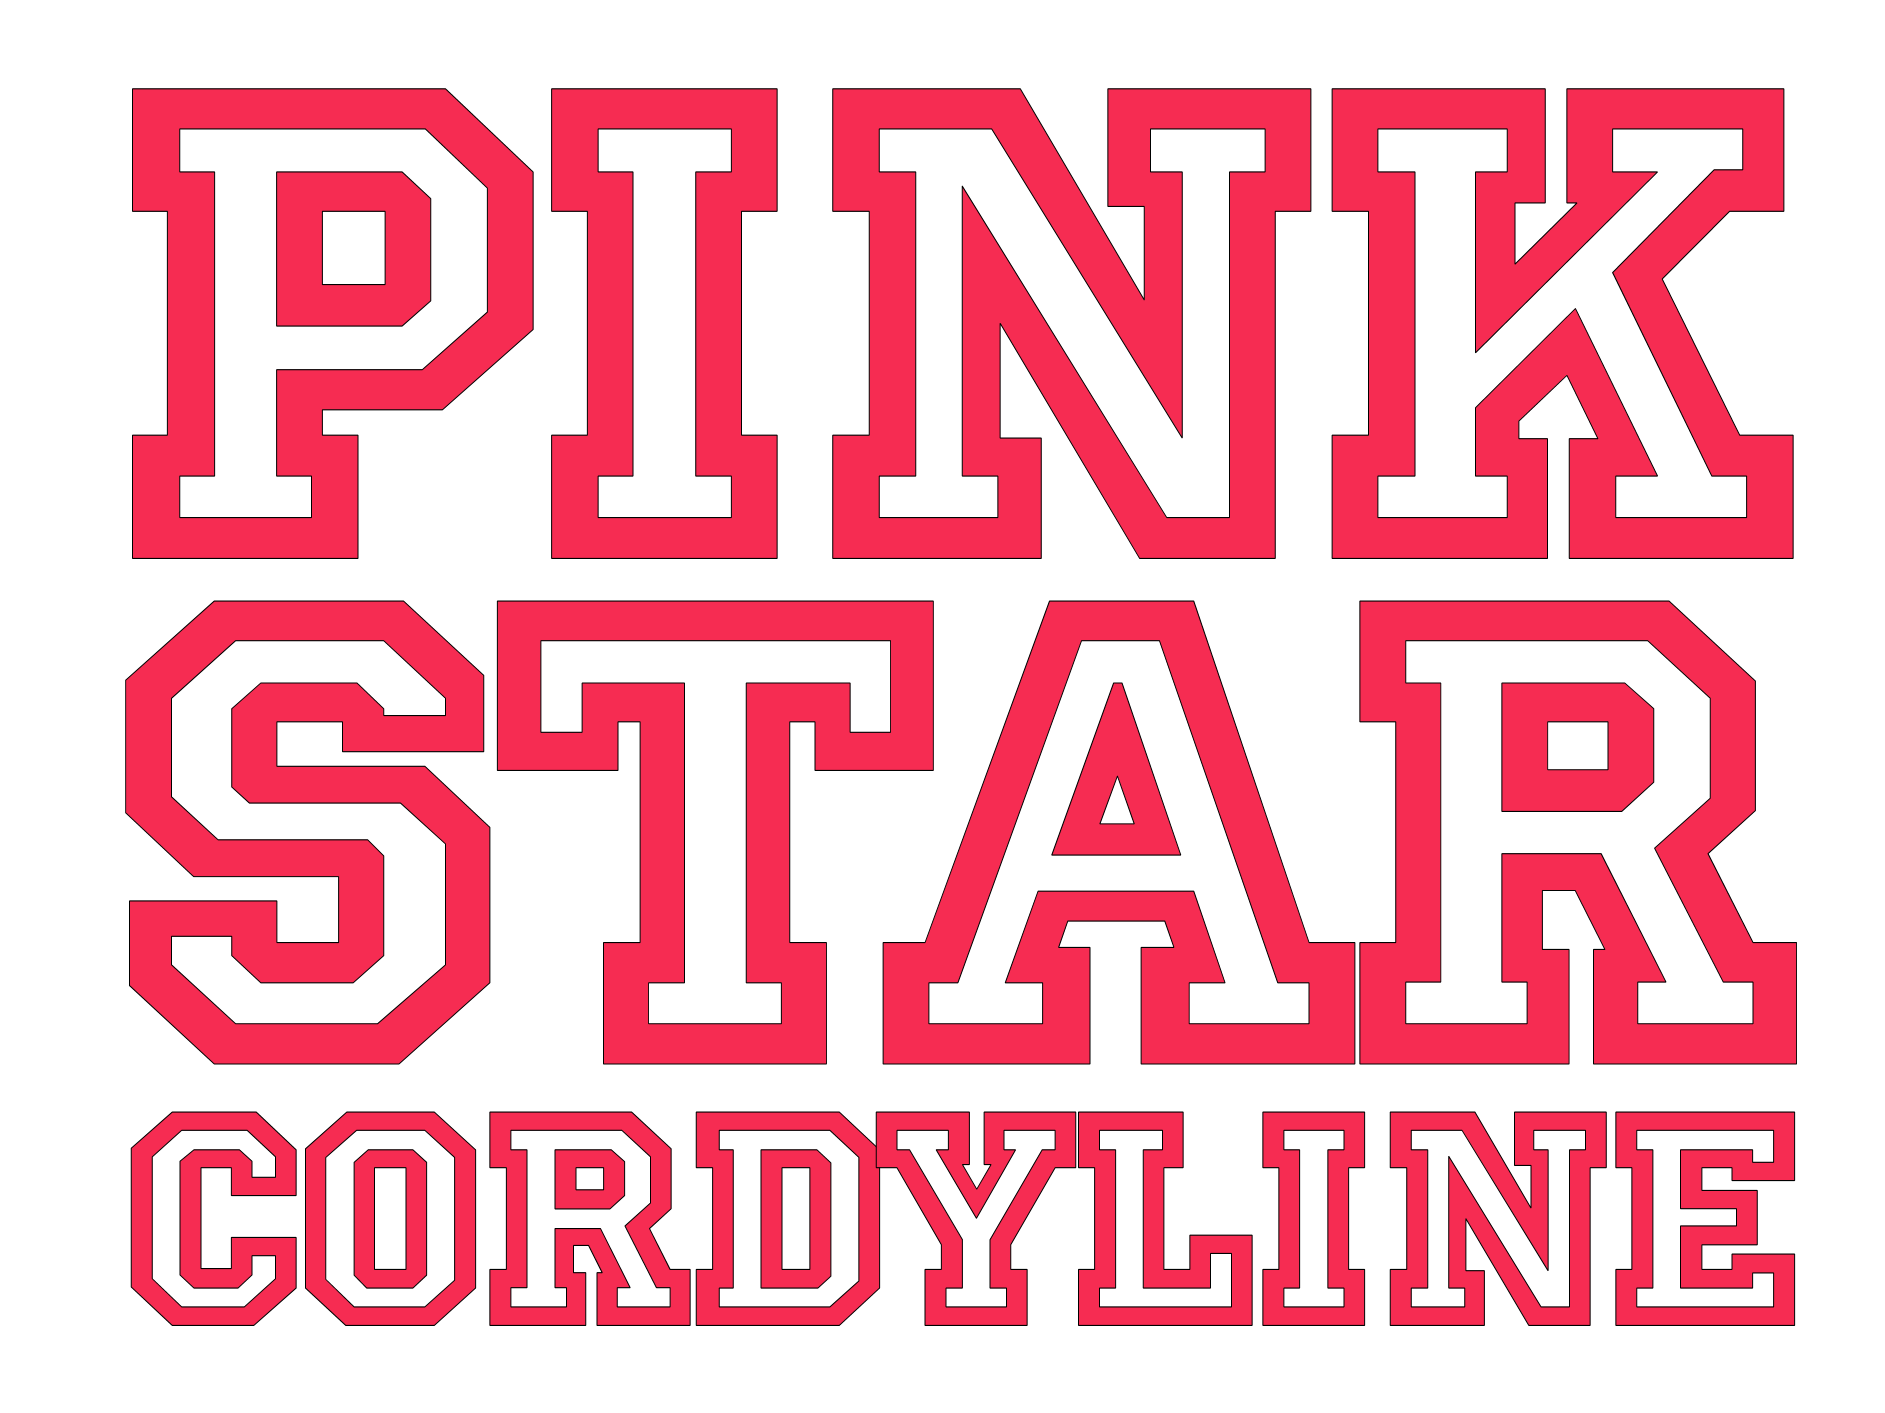 logo-cordyline-australis-pink-star-tus019-pp30-652